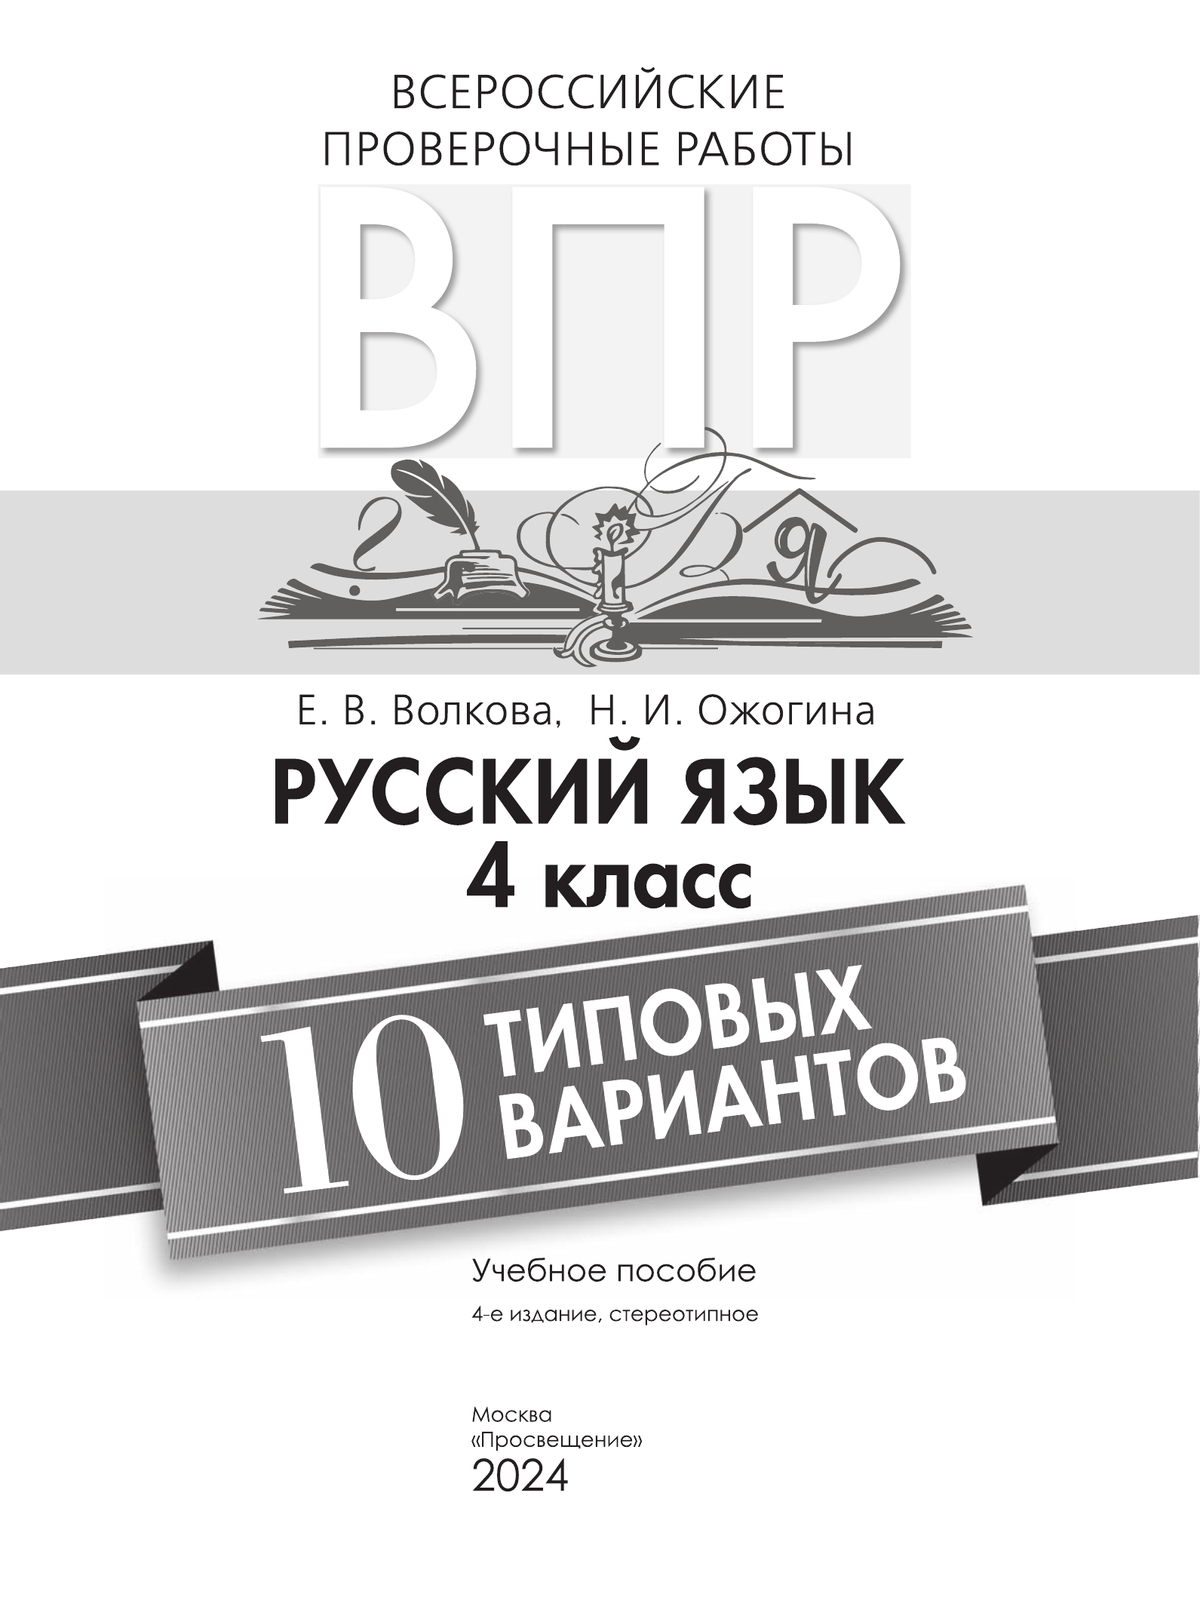 Всероссийские проверочные работы. Русский язык. 10 типовых вариантов. 4 класс 6